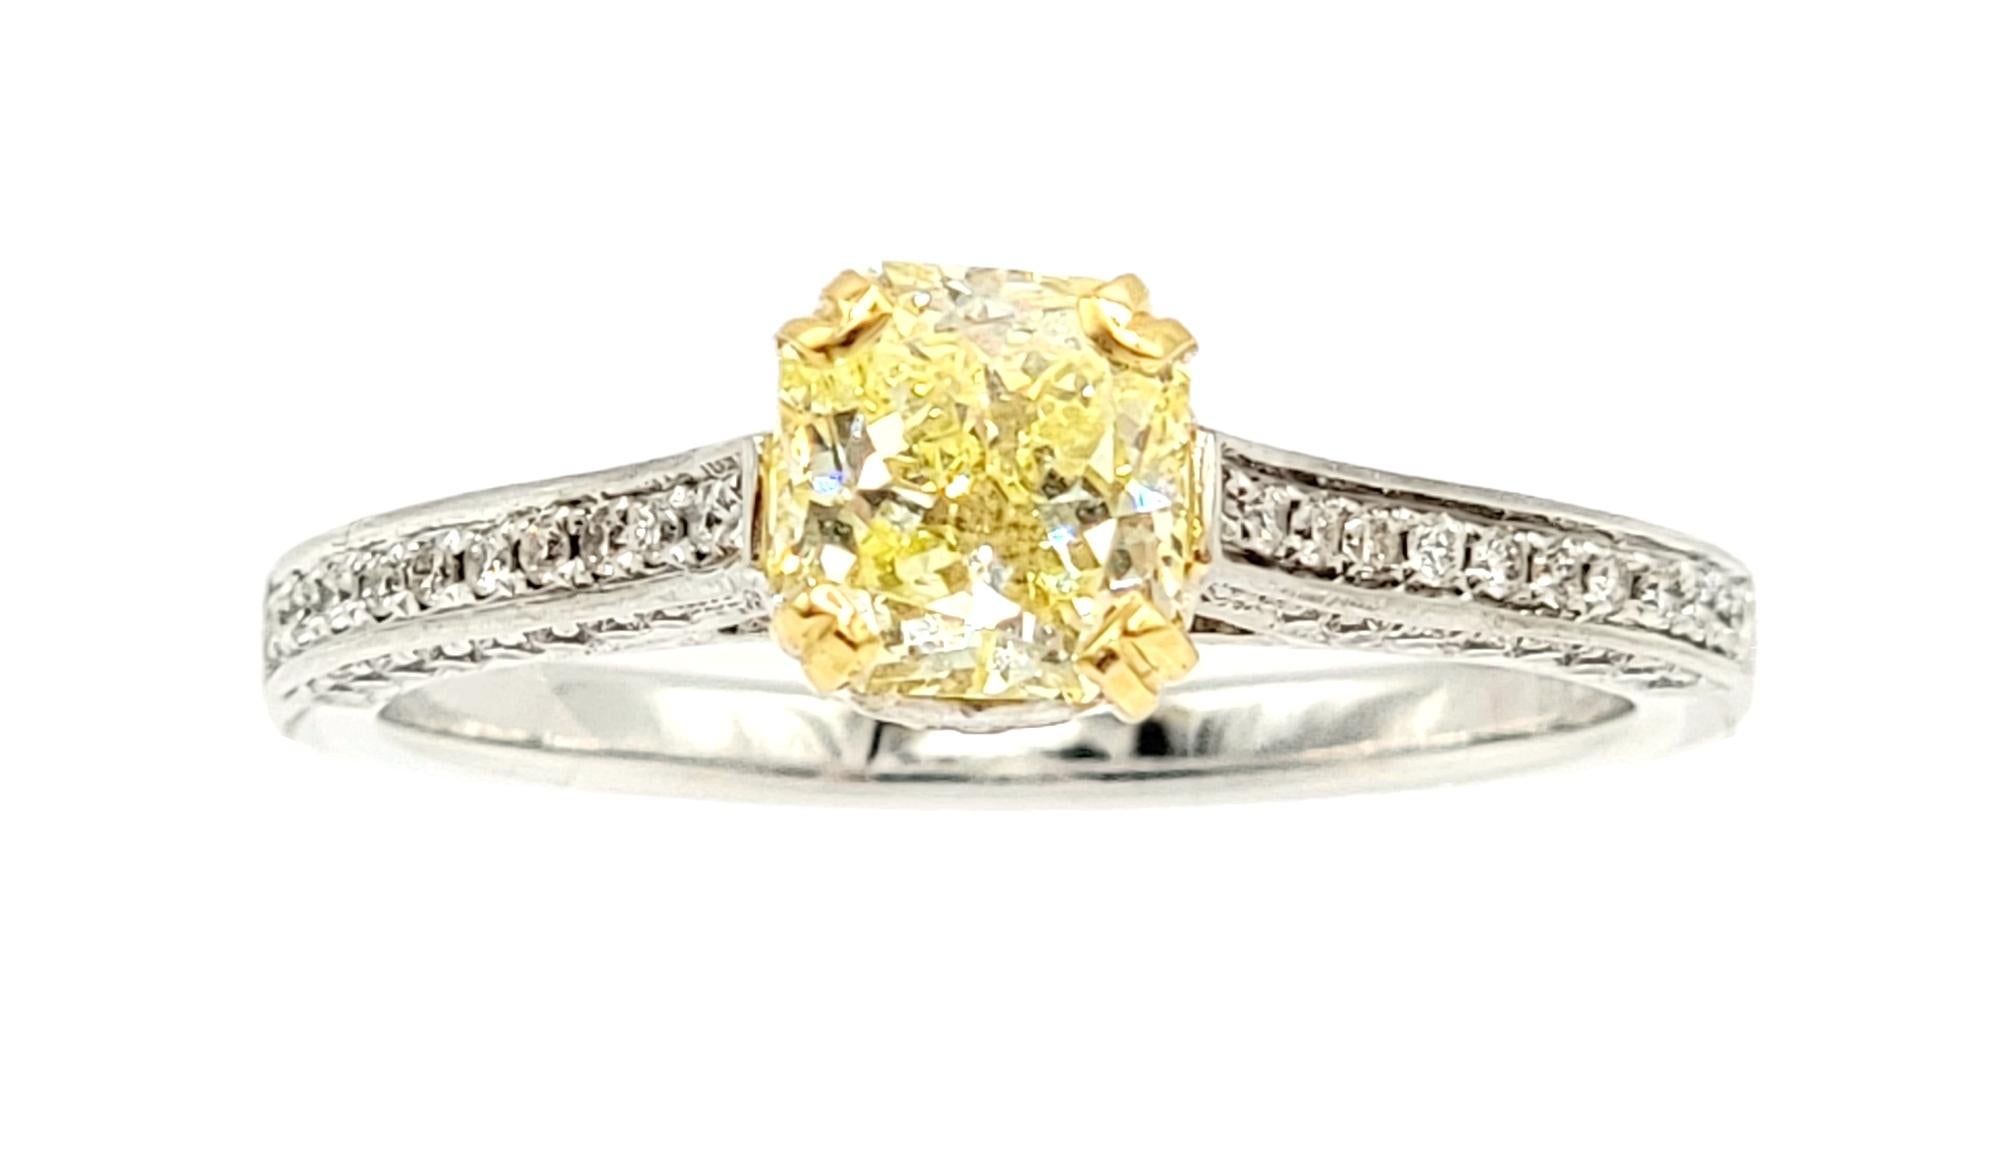 Taille de l'anneau : 6.5

Magnifique et unique bague de fiançailles en diamant jaune et blanc qui met en valeur la couleur et la brillance des deux. Cette bague à couper le souffle présente un étincelant diamant Fancy Intense Yellow de 0,85 carat,